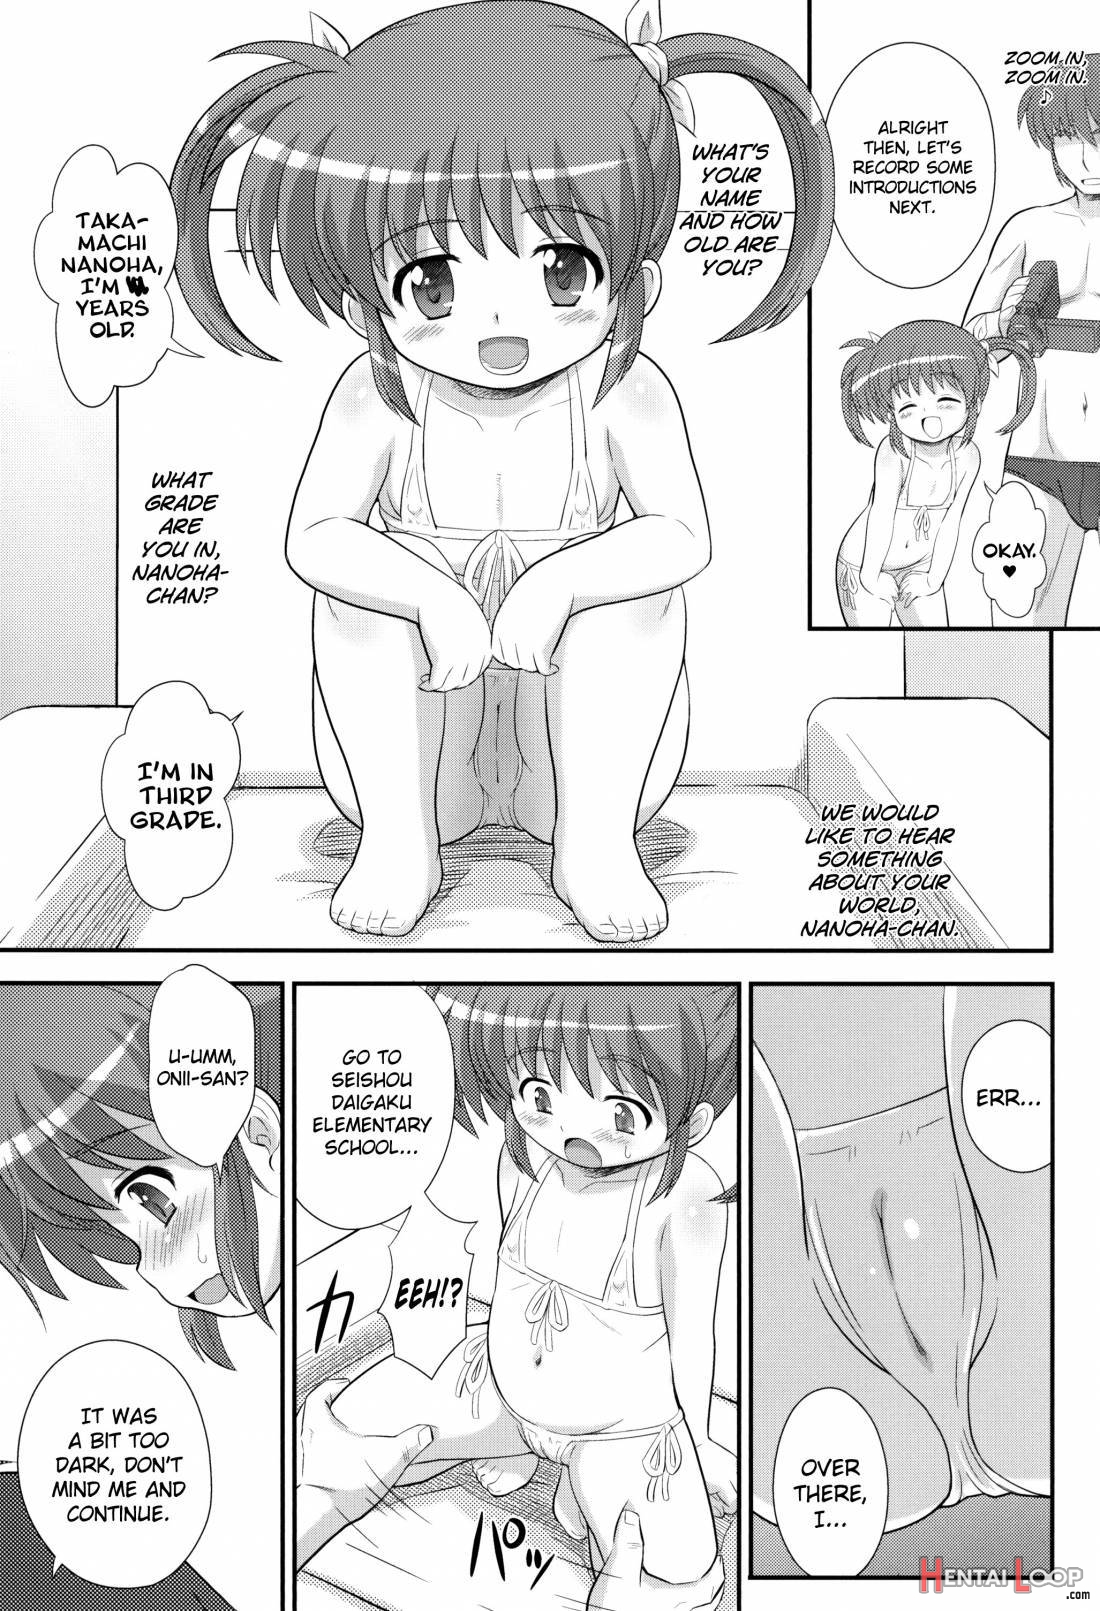 Nanoha-chan U-q page 4